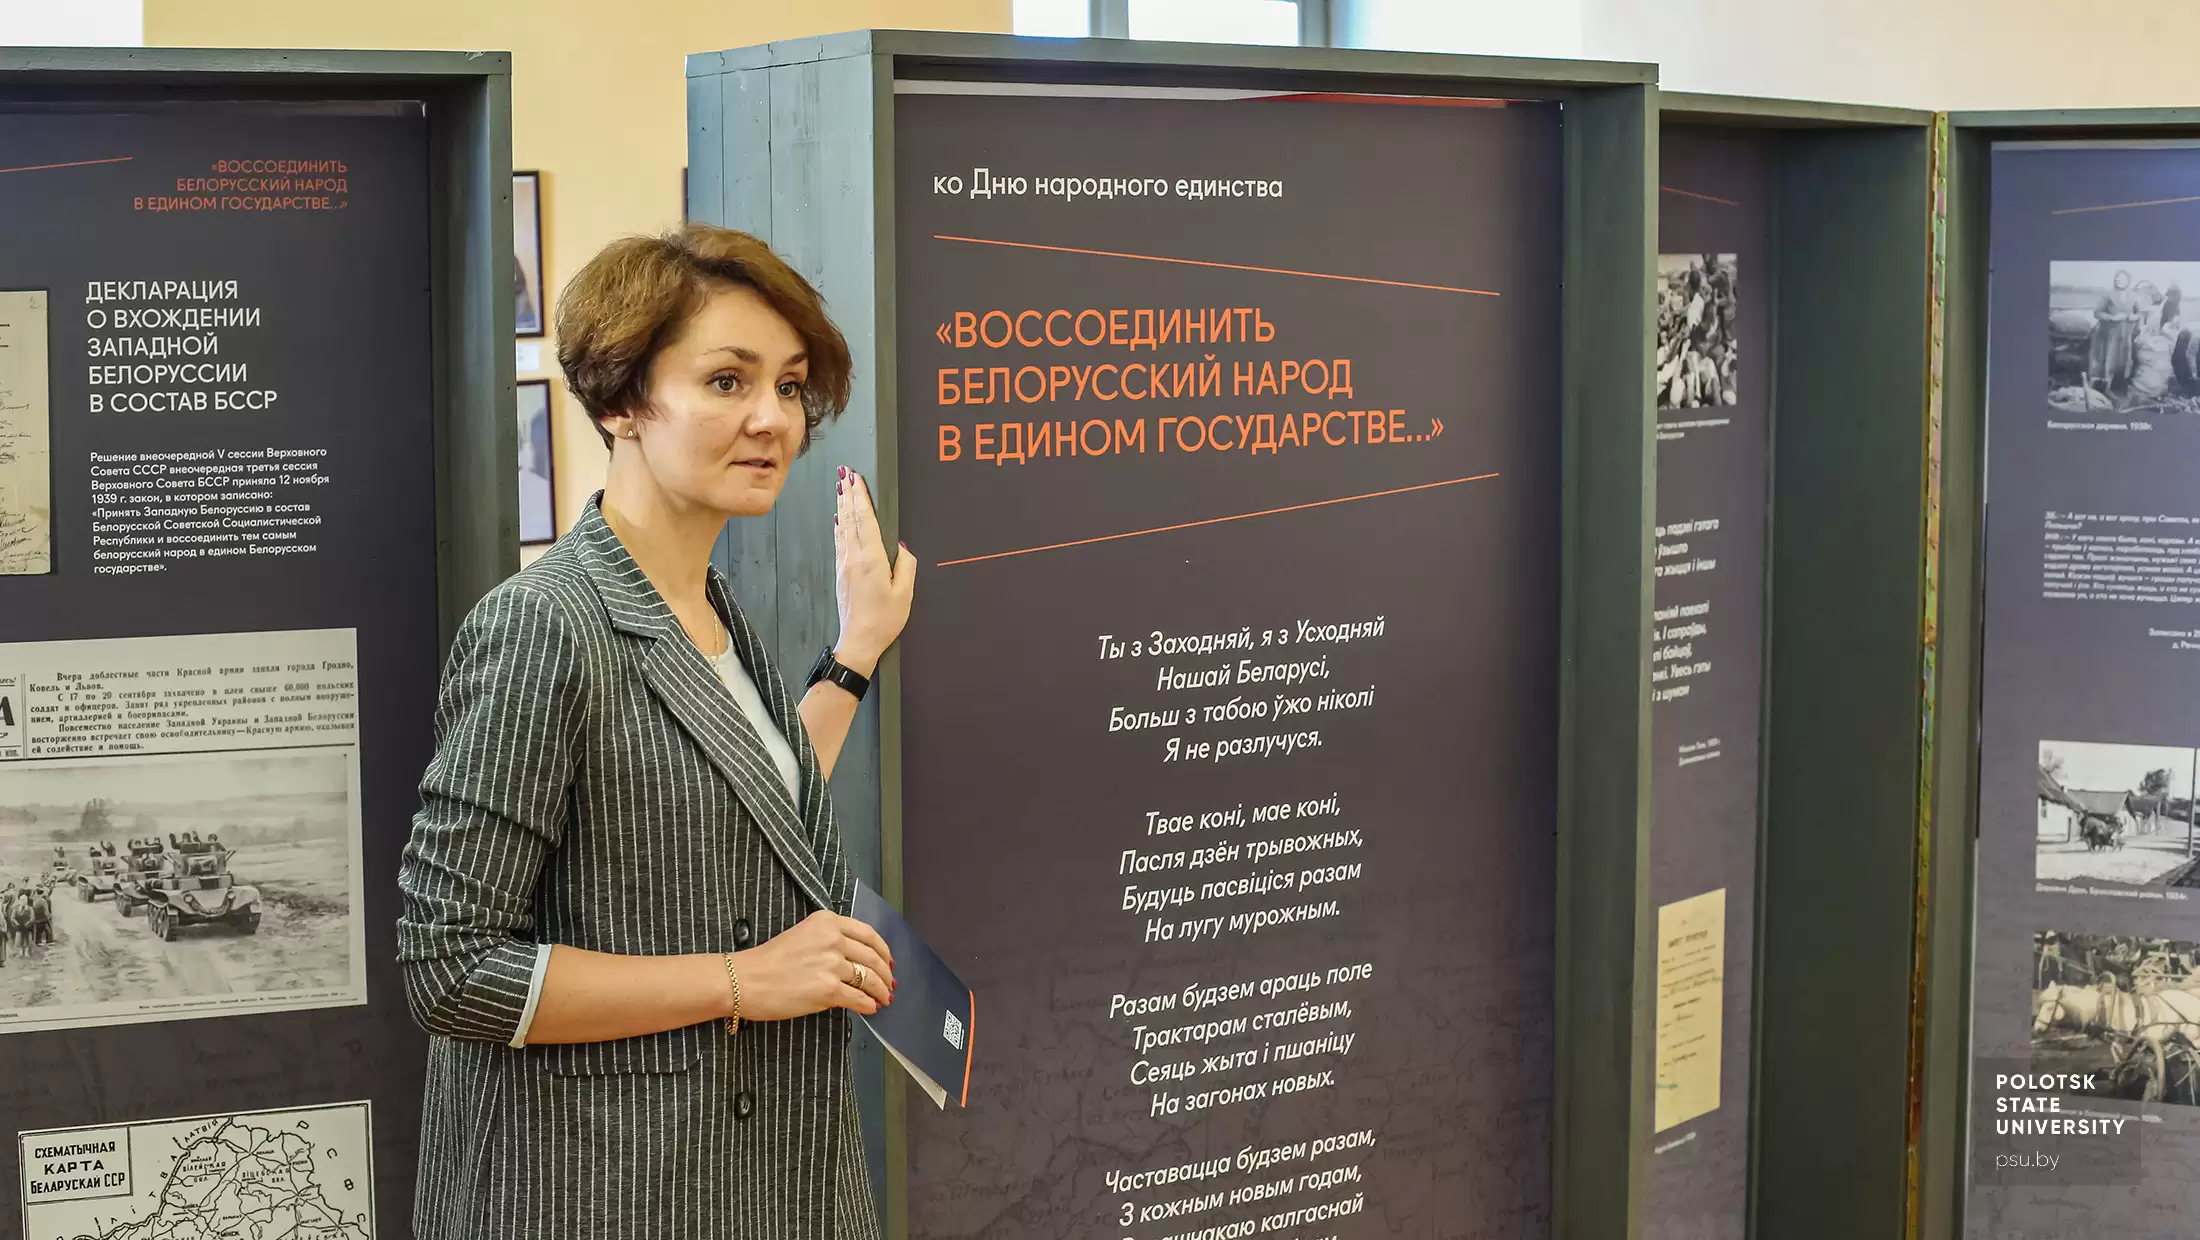 Открытие выставки «Воссоединить белорусский народ в едином государстве…»